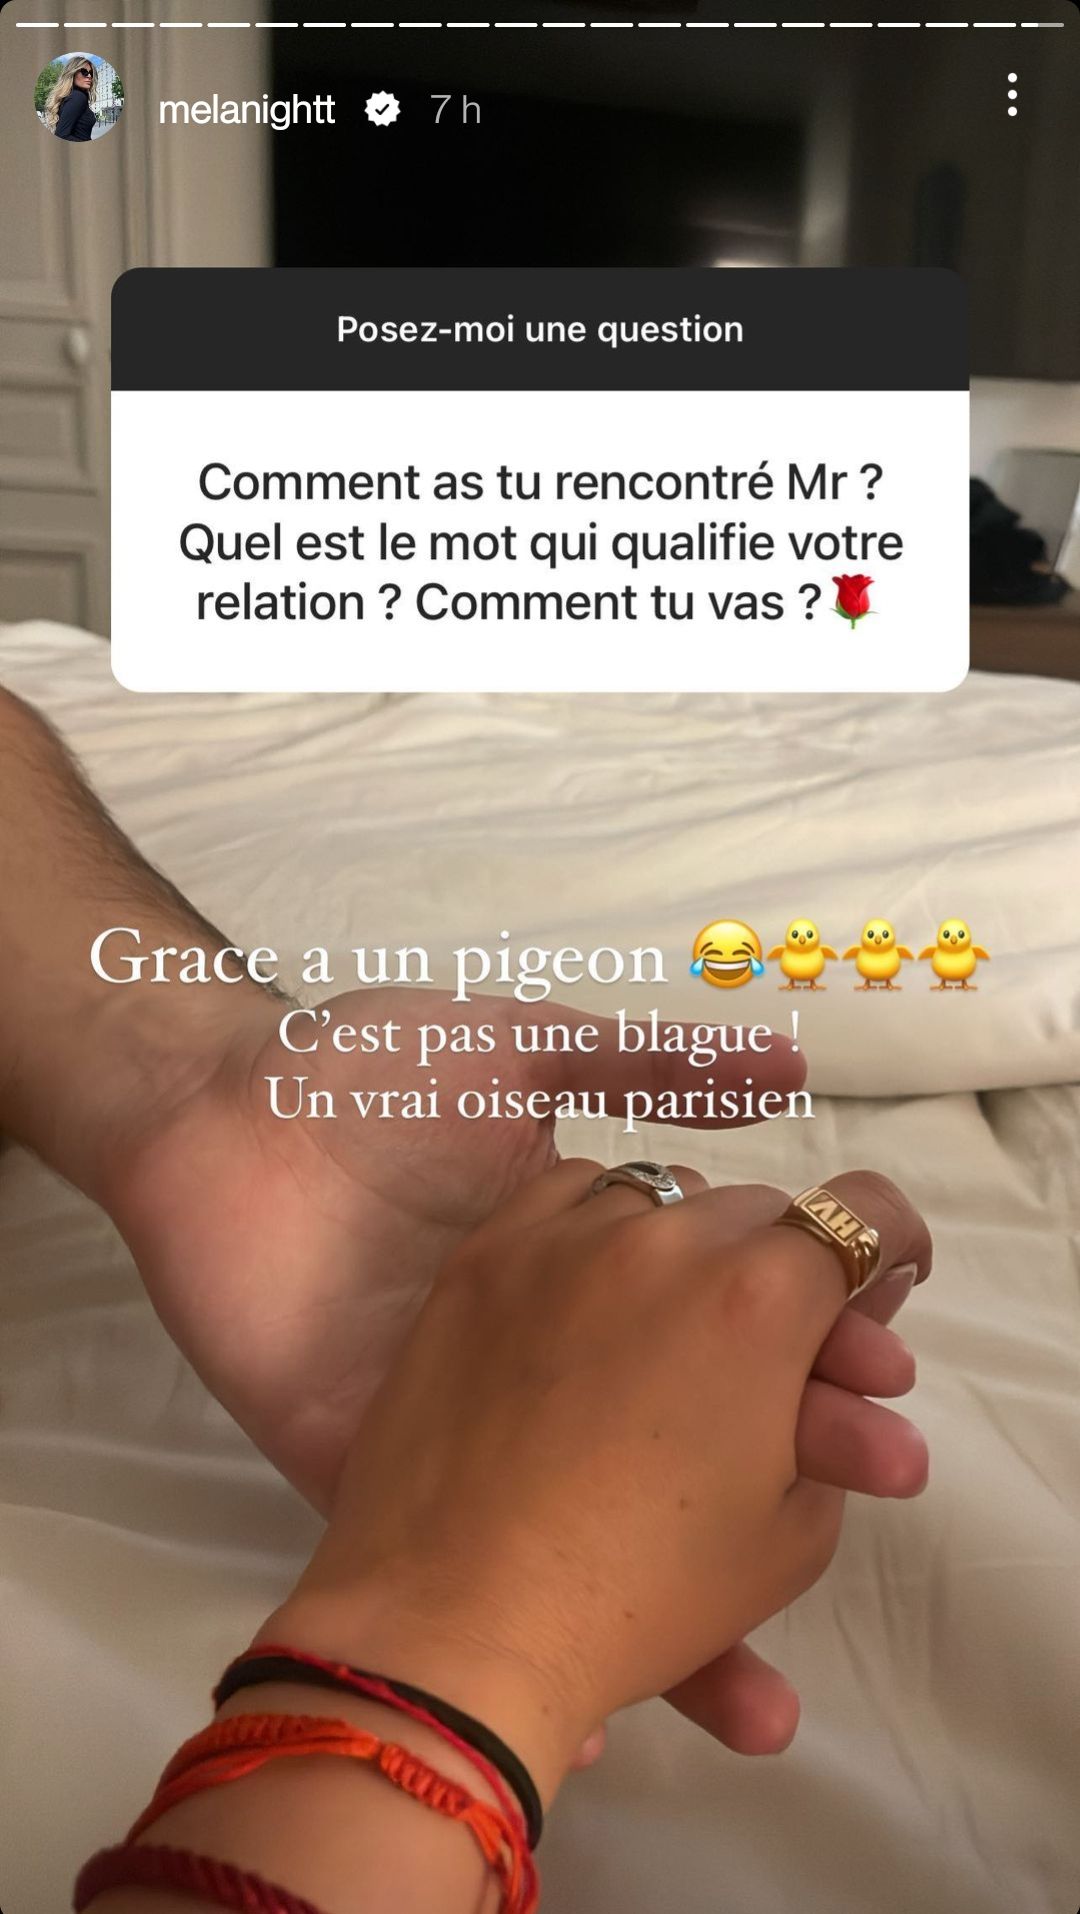  Mélanight parle de sa rencontre avec son compagnon @Instagram